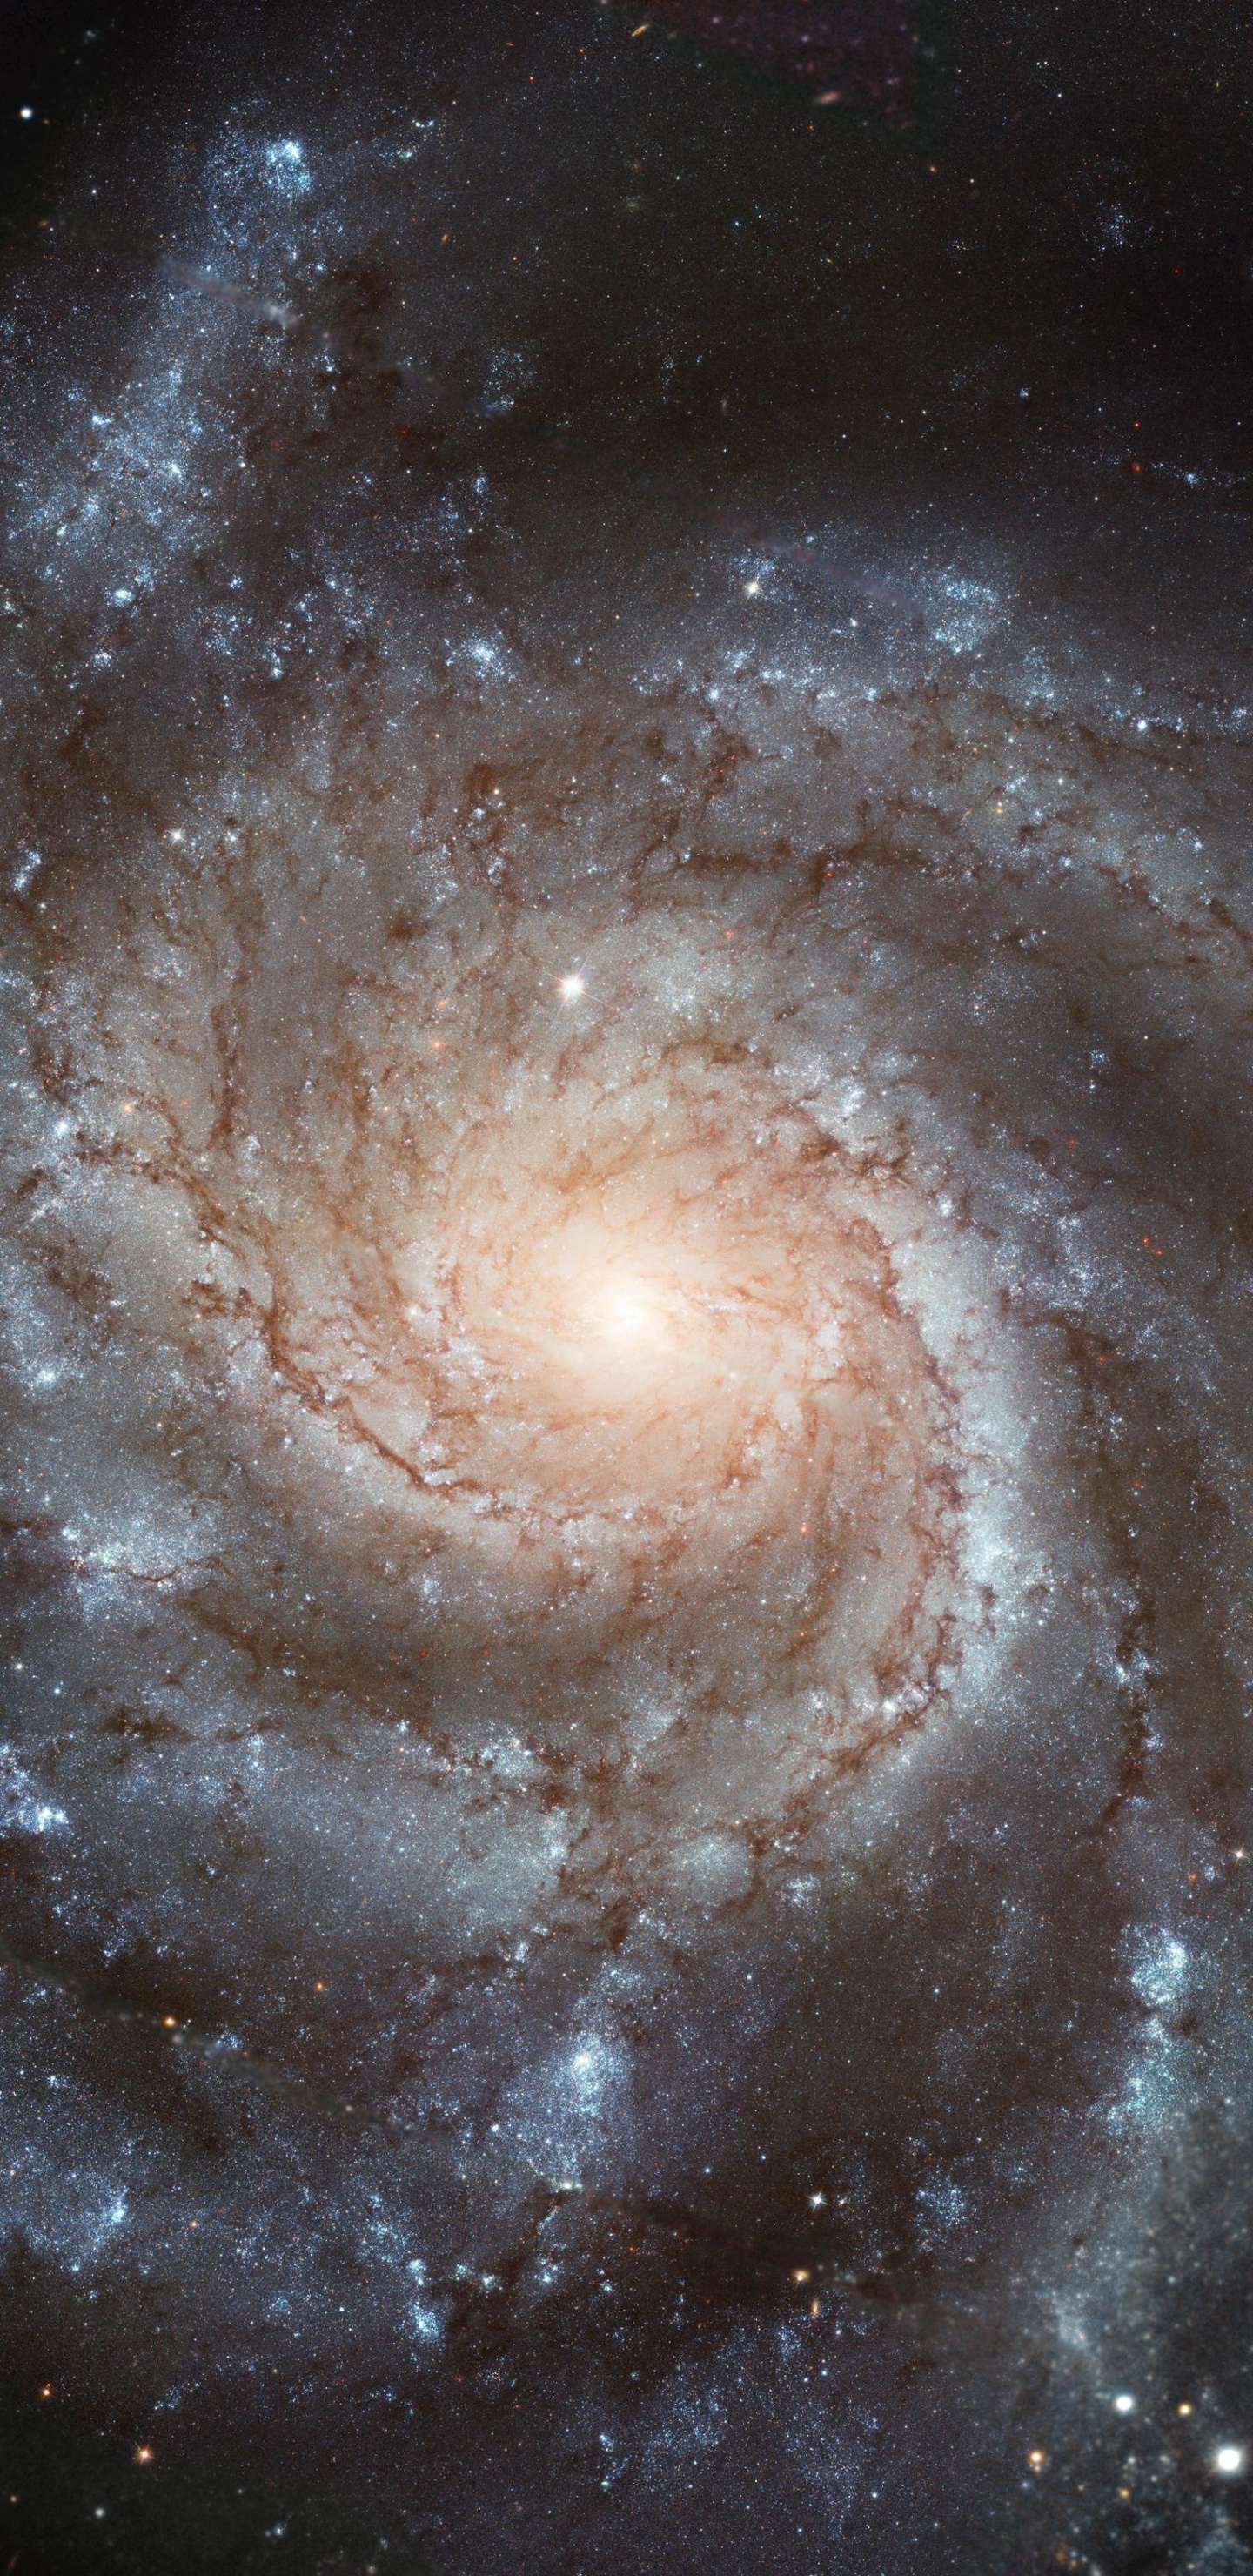 螺旋星系, 哈勃太空望远镜, 天文学, 天文学对象, 宇宙 壁纸 1440x2960 允许